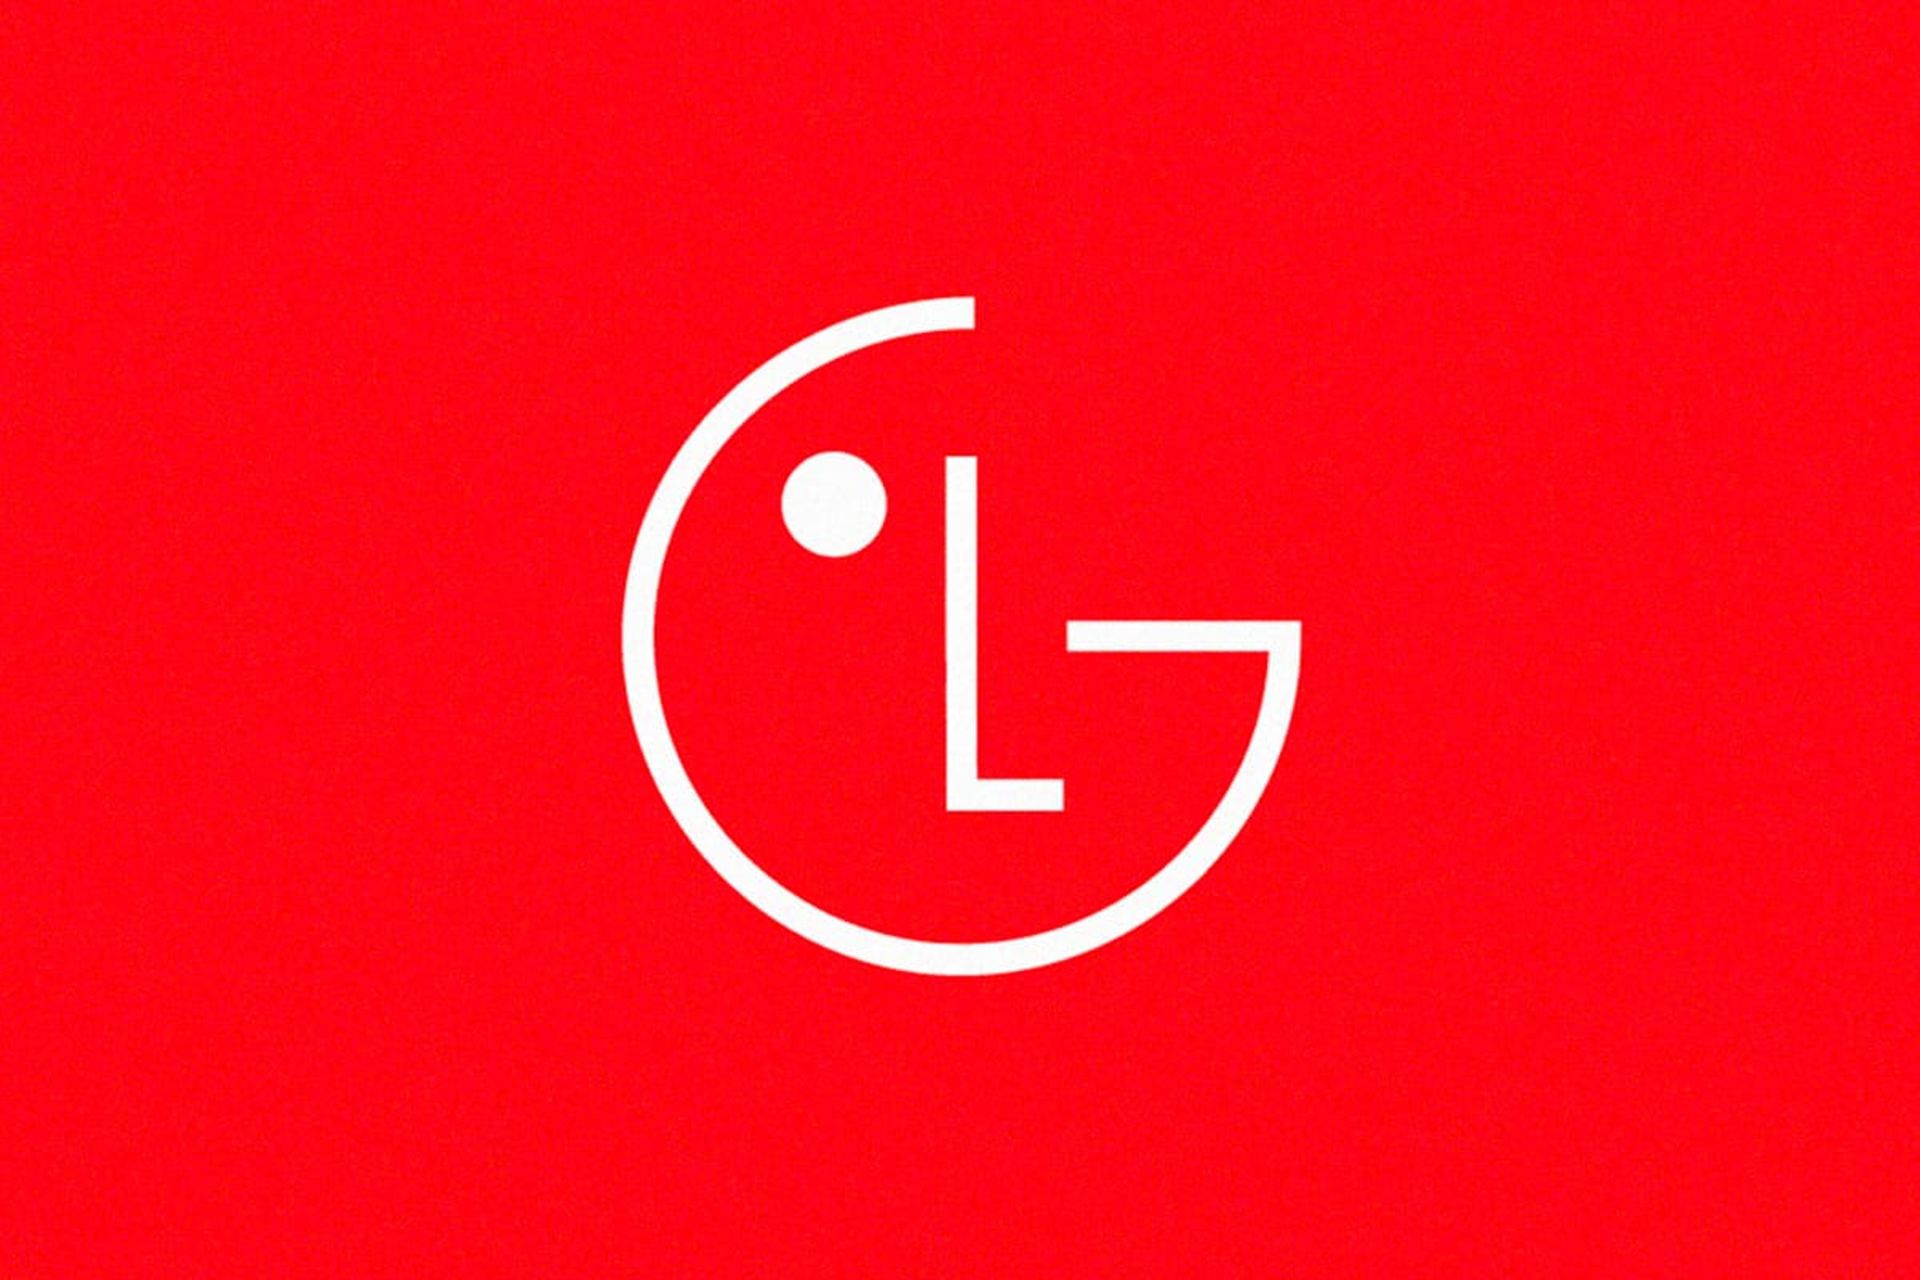 لوگو جدید ال جی ۲۰۲۳ پس زمینه قرمز LG